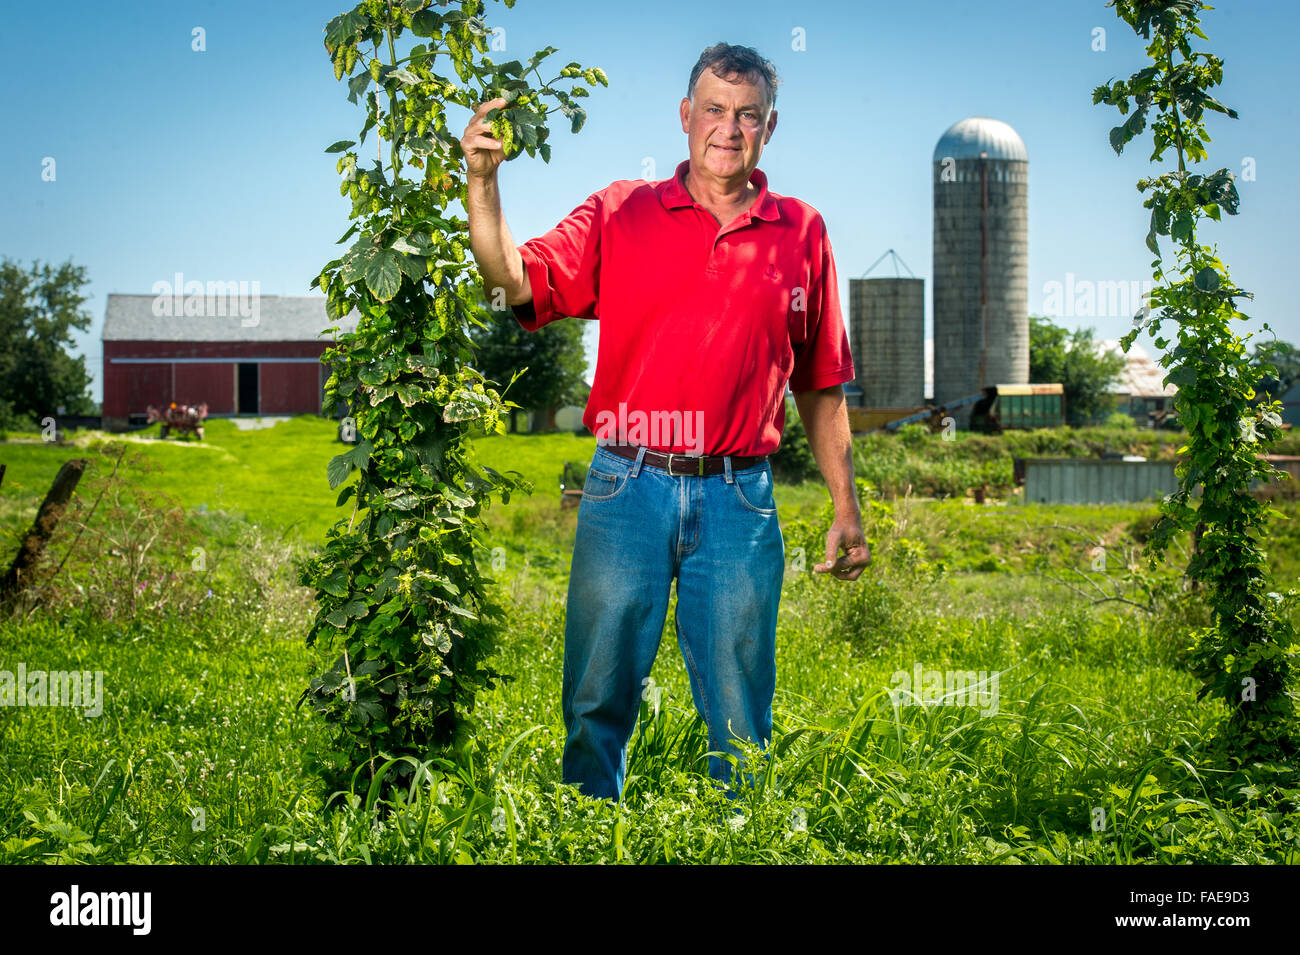 Agricoltore in piedi al centro di un ampio campo di coltivazione, tenendo un hop vite con silos dietro di lui Foto Stock